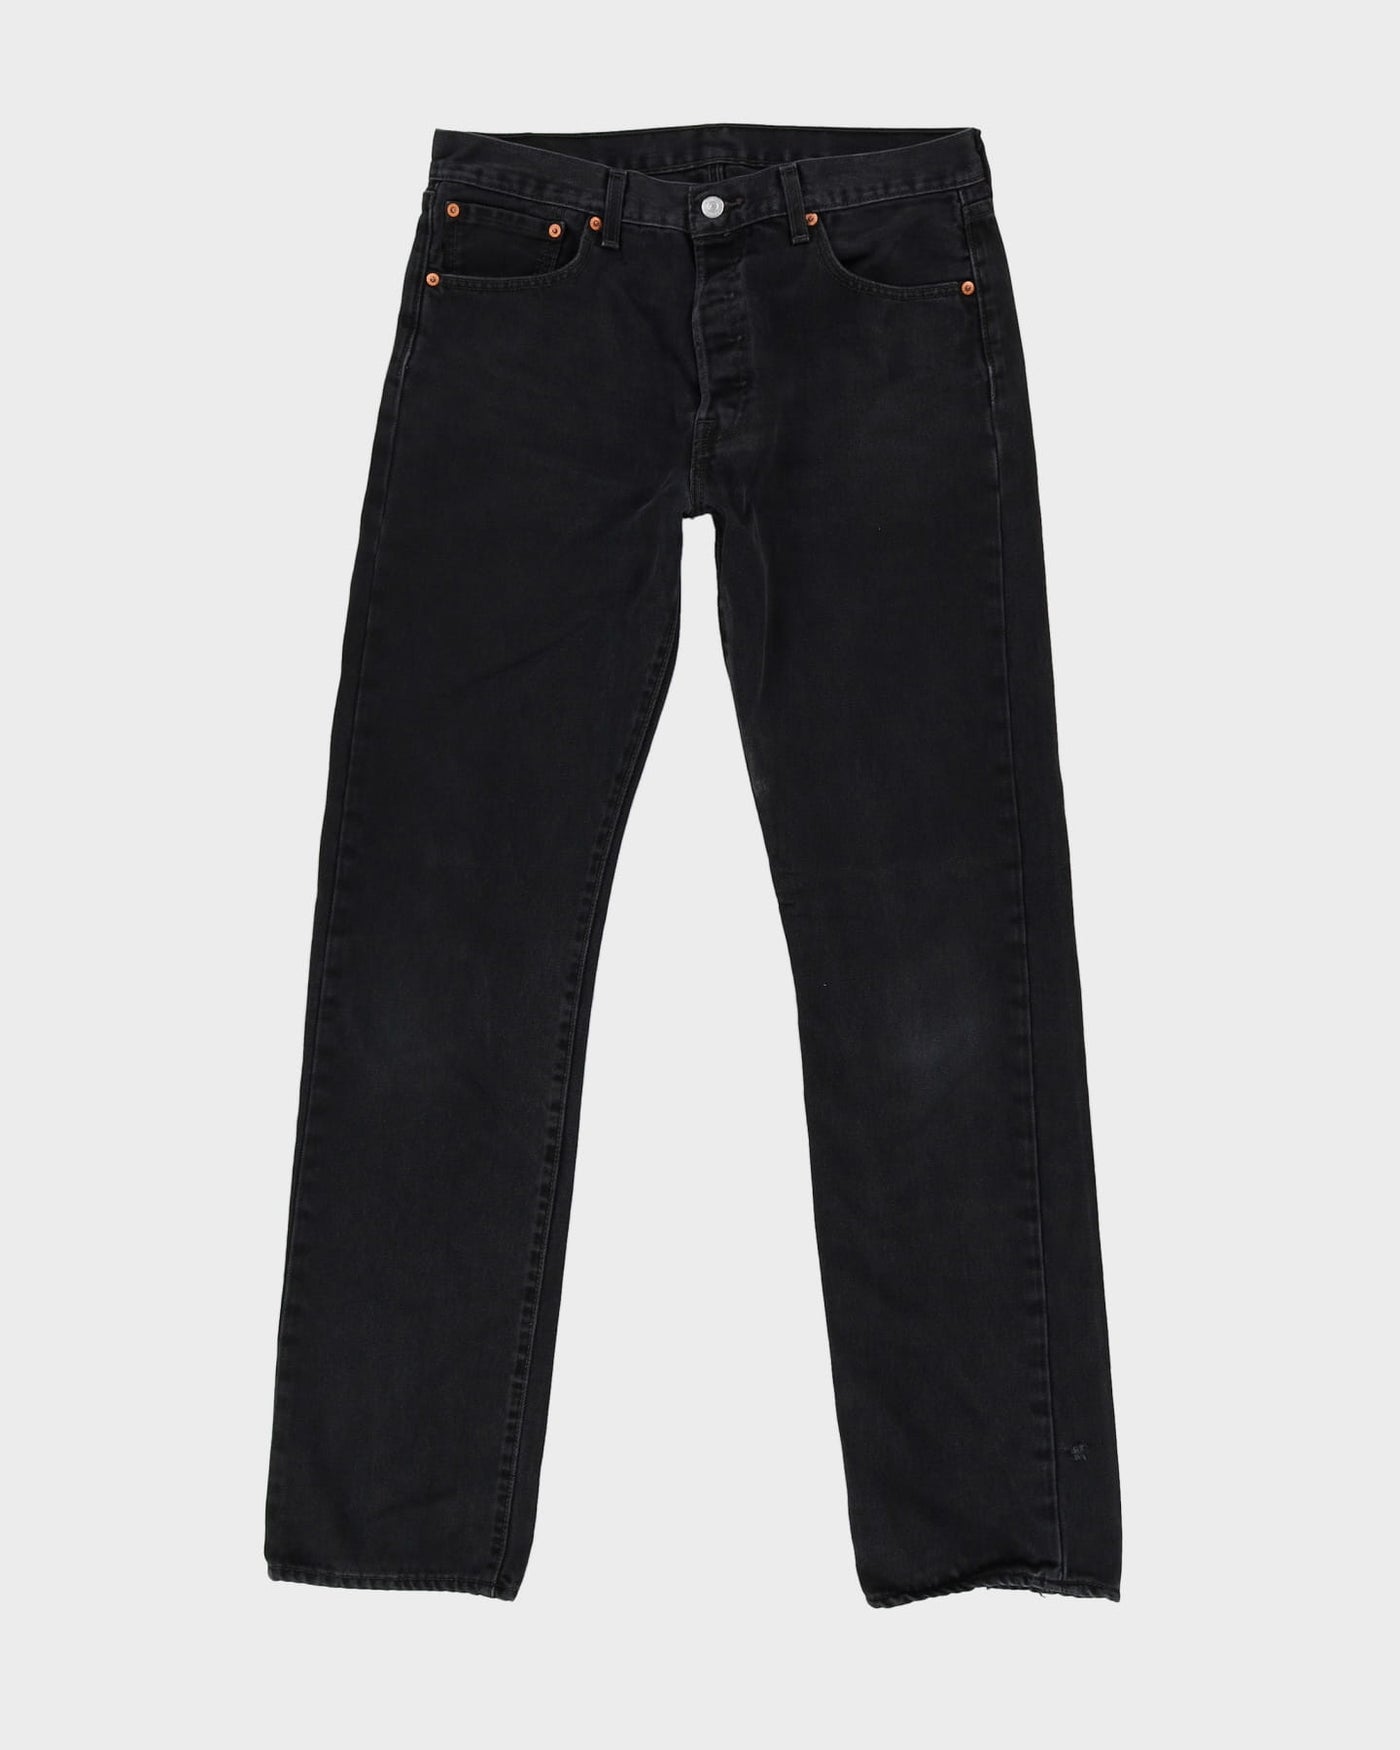 Levi's 501 Dark Wash Jeans - W34 L34